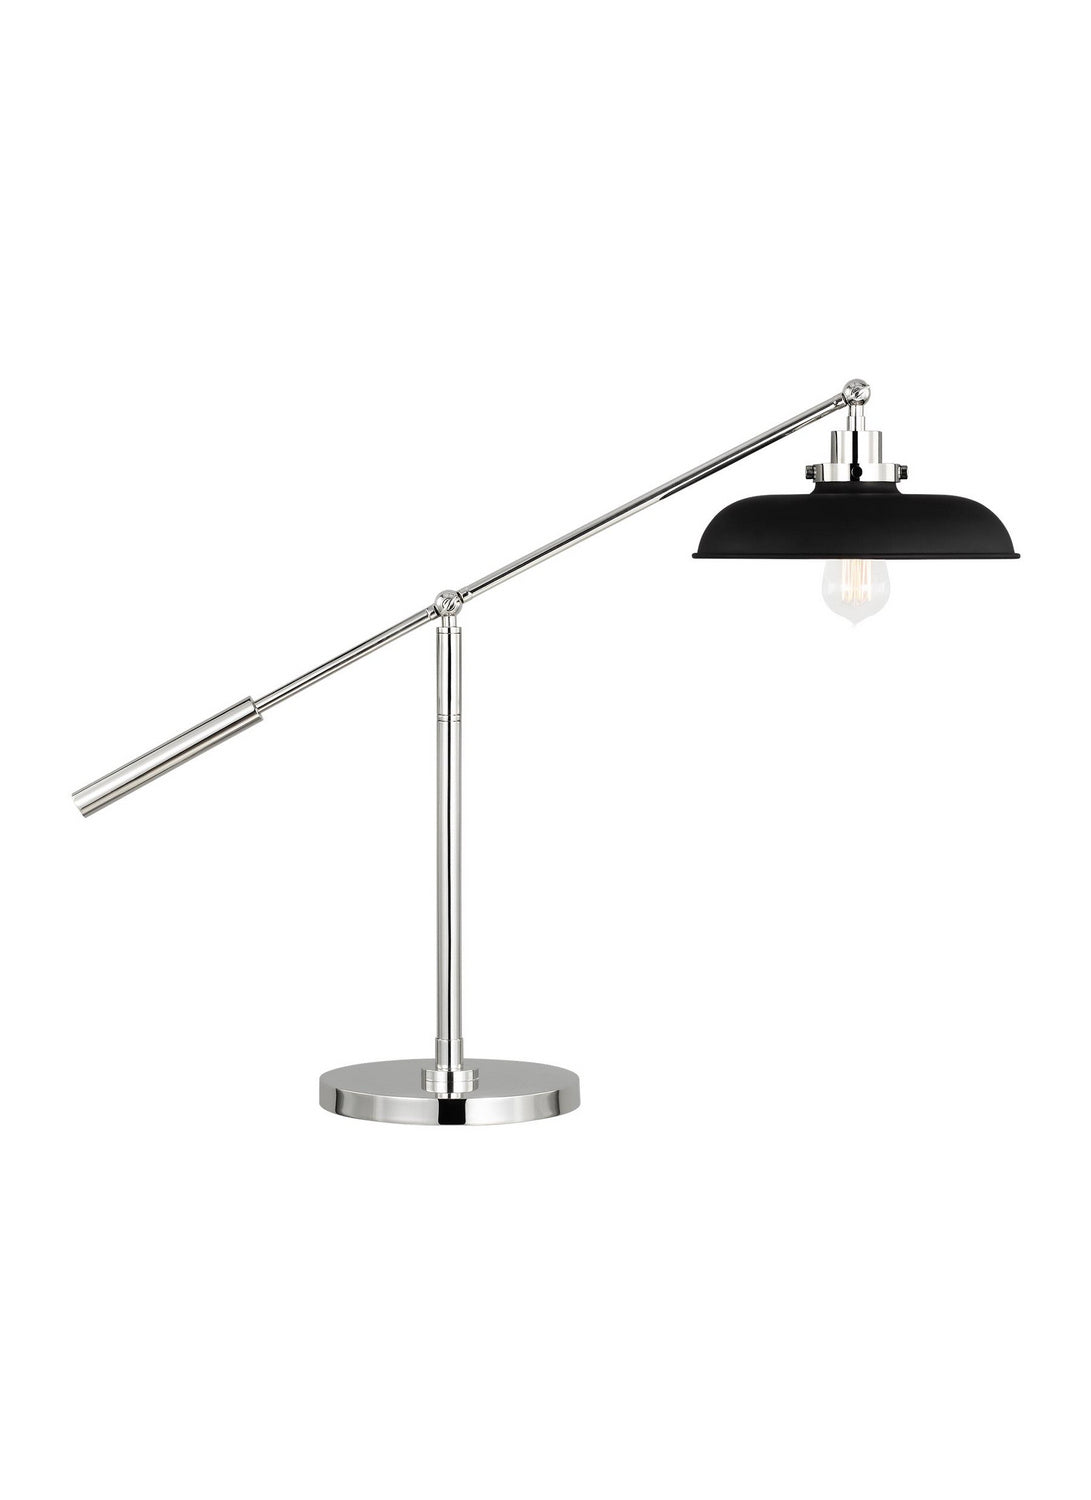 Visual Comfort Studio Canada - One Light Desk Lamp - Wellfleet